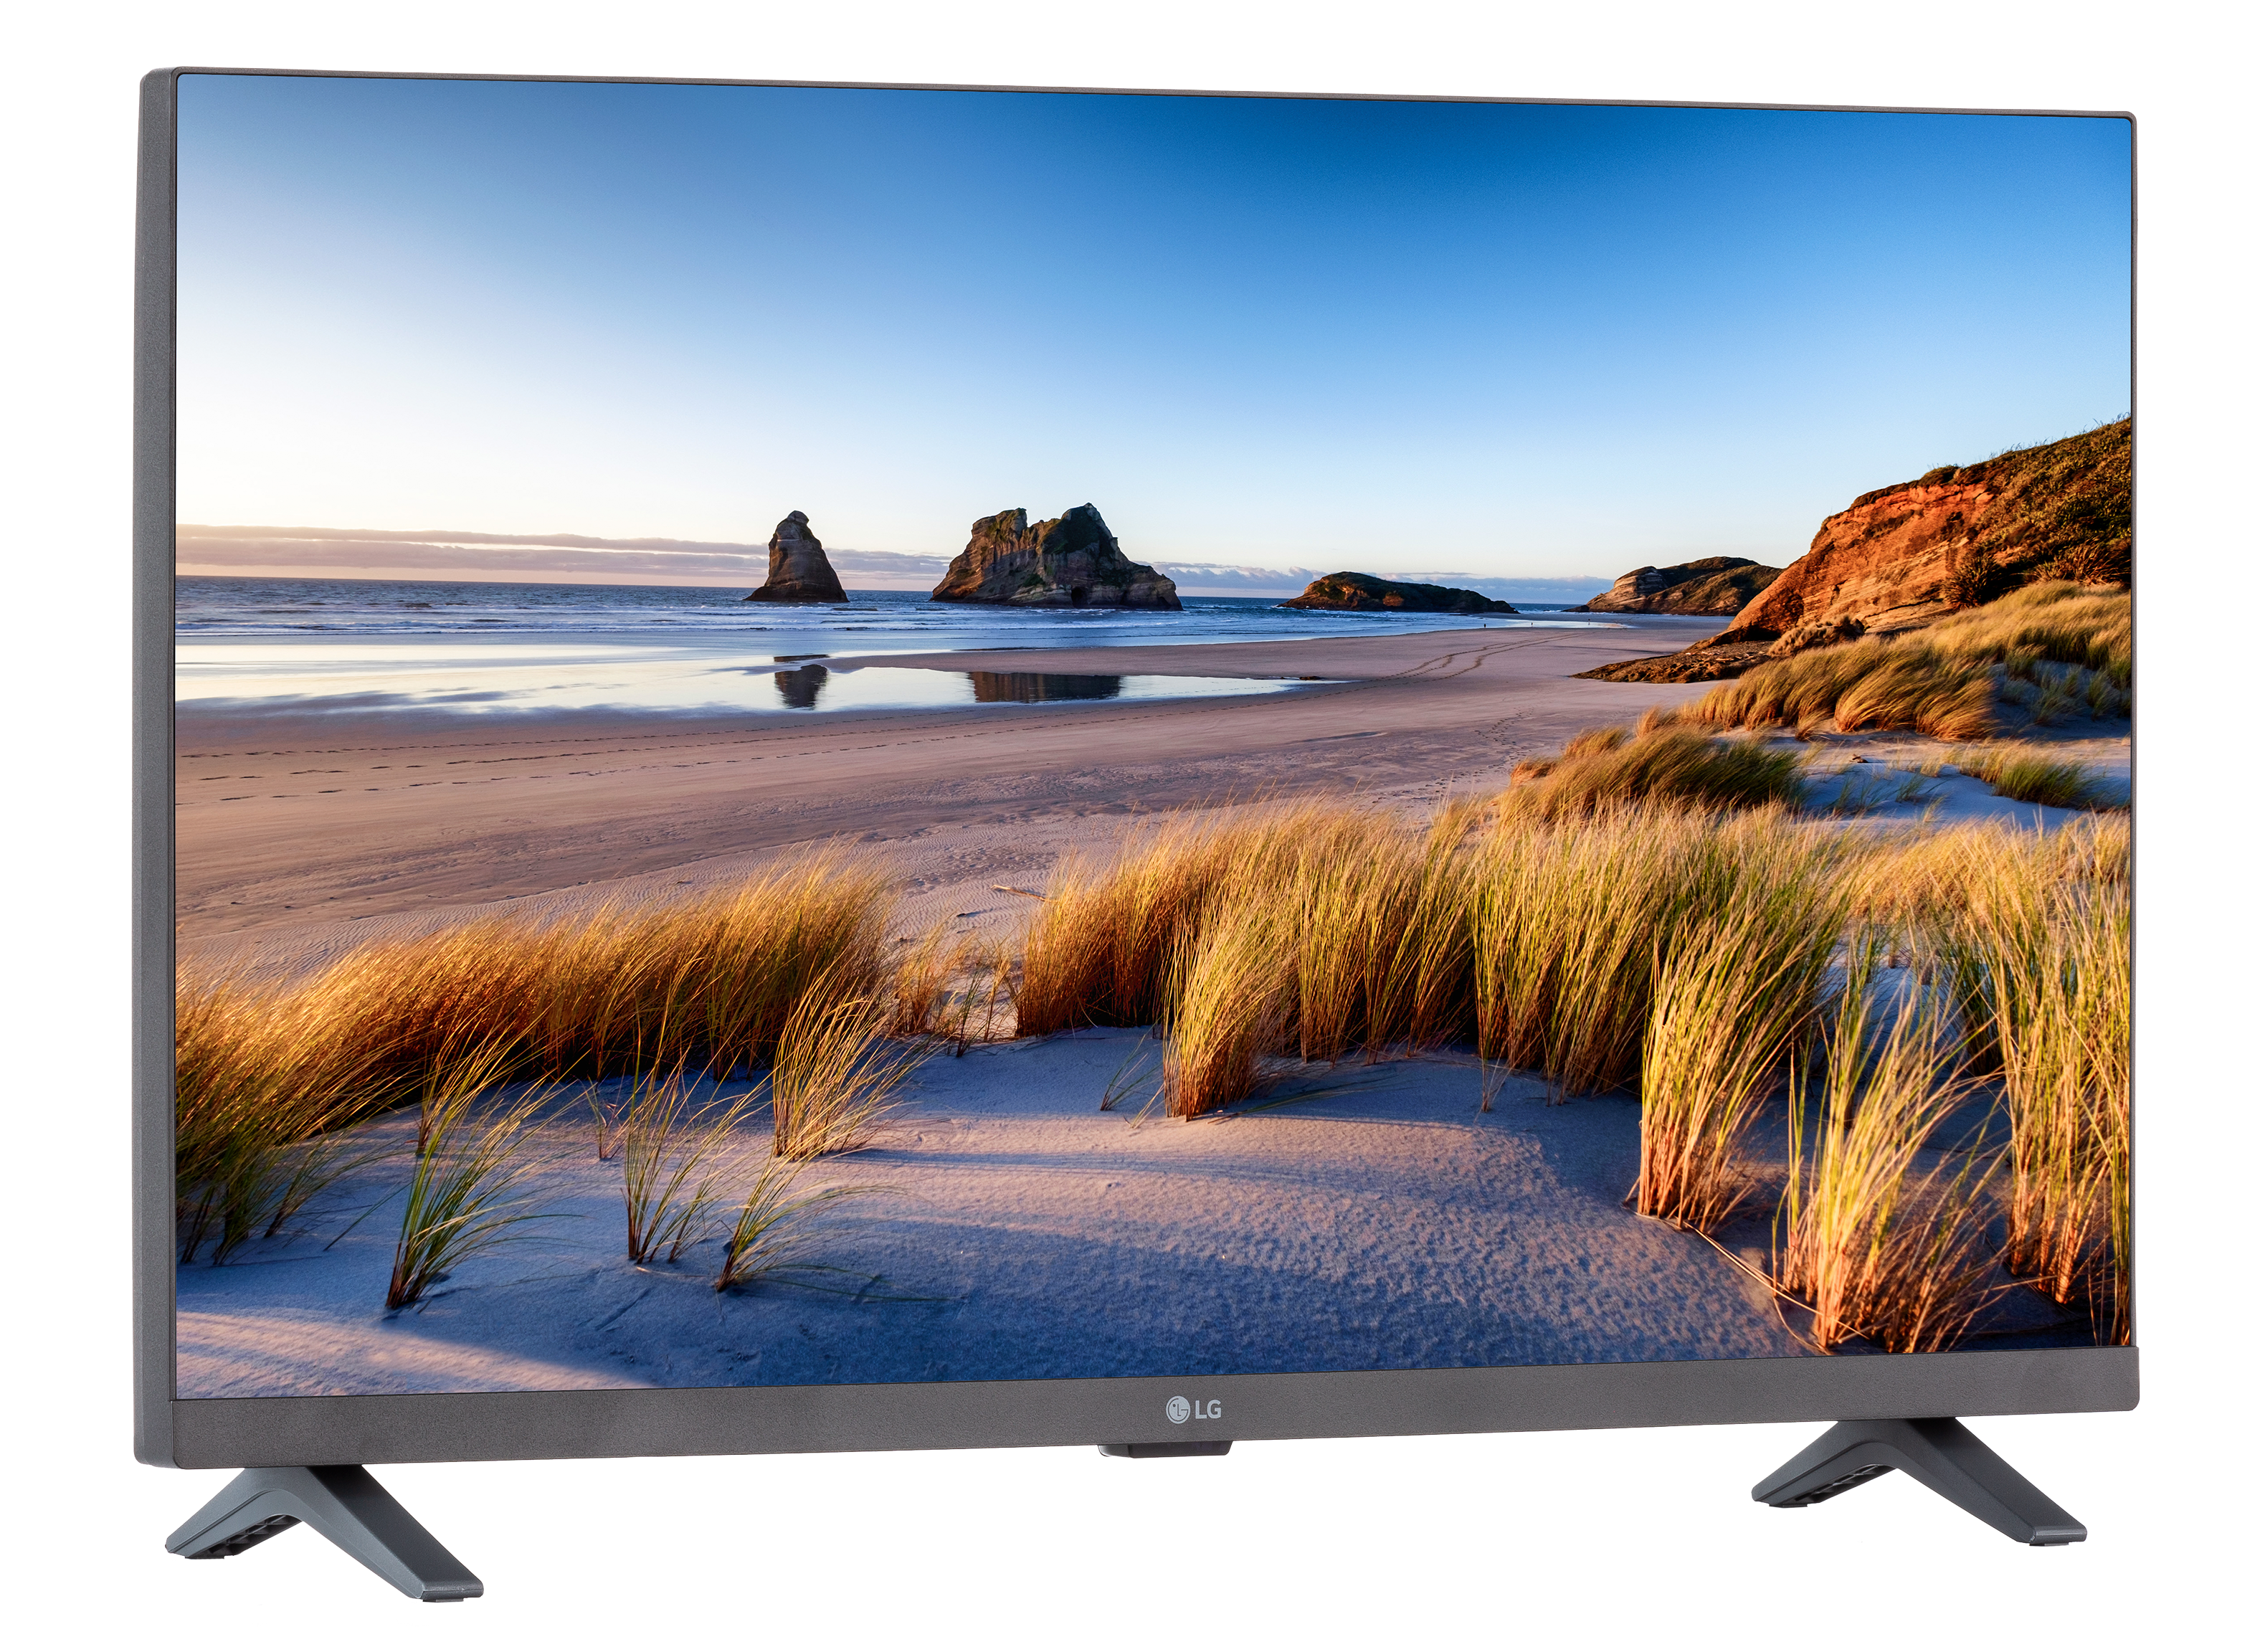  LG 27LP600B-P Monitor de TV IPS Full HD (1920 x 1080) de 27  pulgadas con 2 altavoces incorporados, entrada HDMI y audio Dolby  27LP600B-P : Electrónica